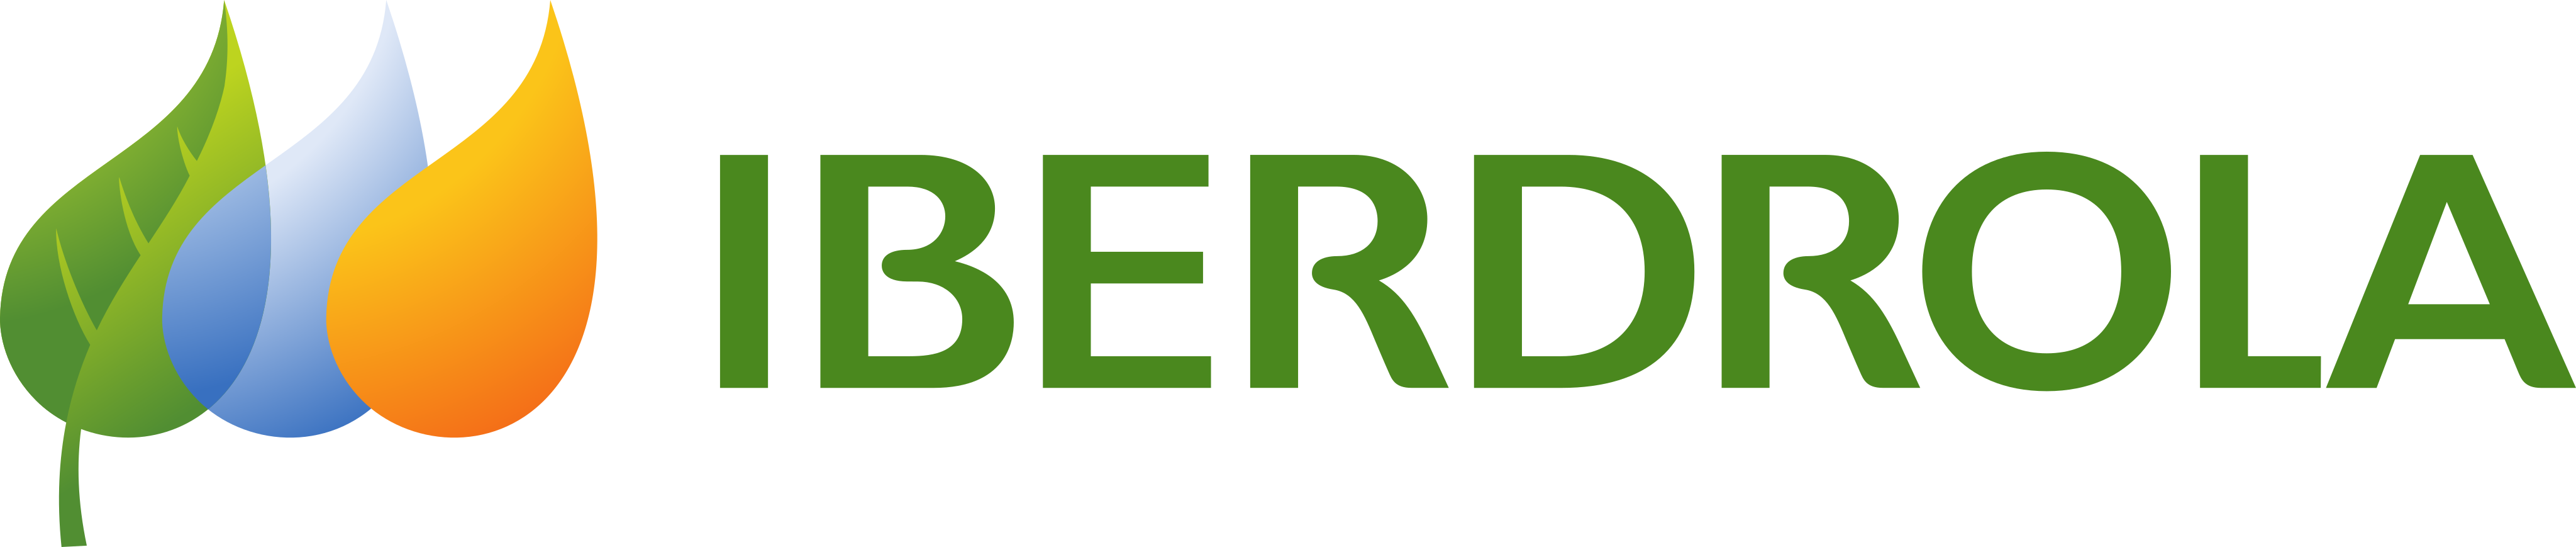 Iberdrola Background Logo PNG Image